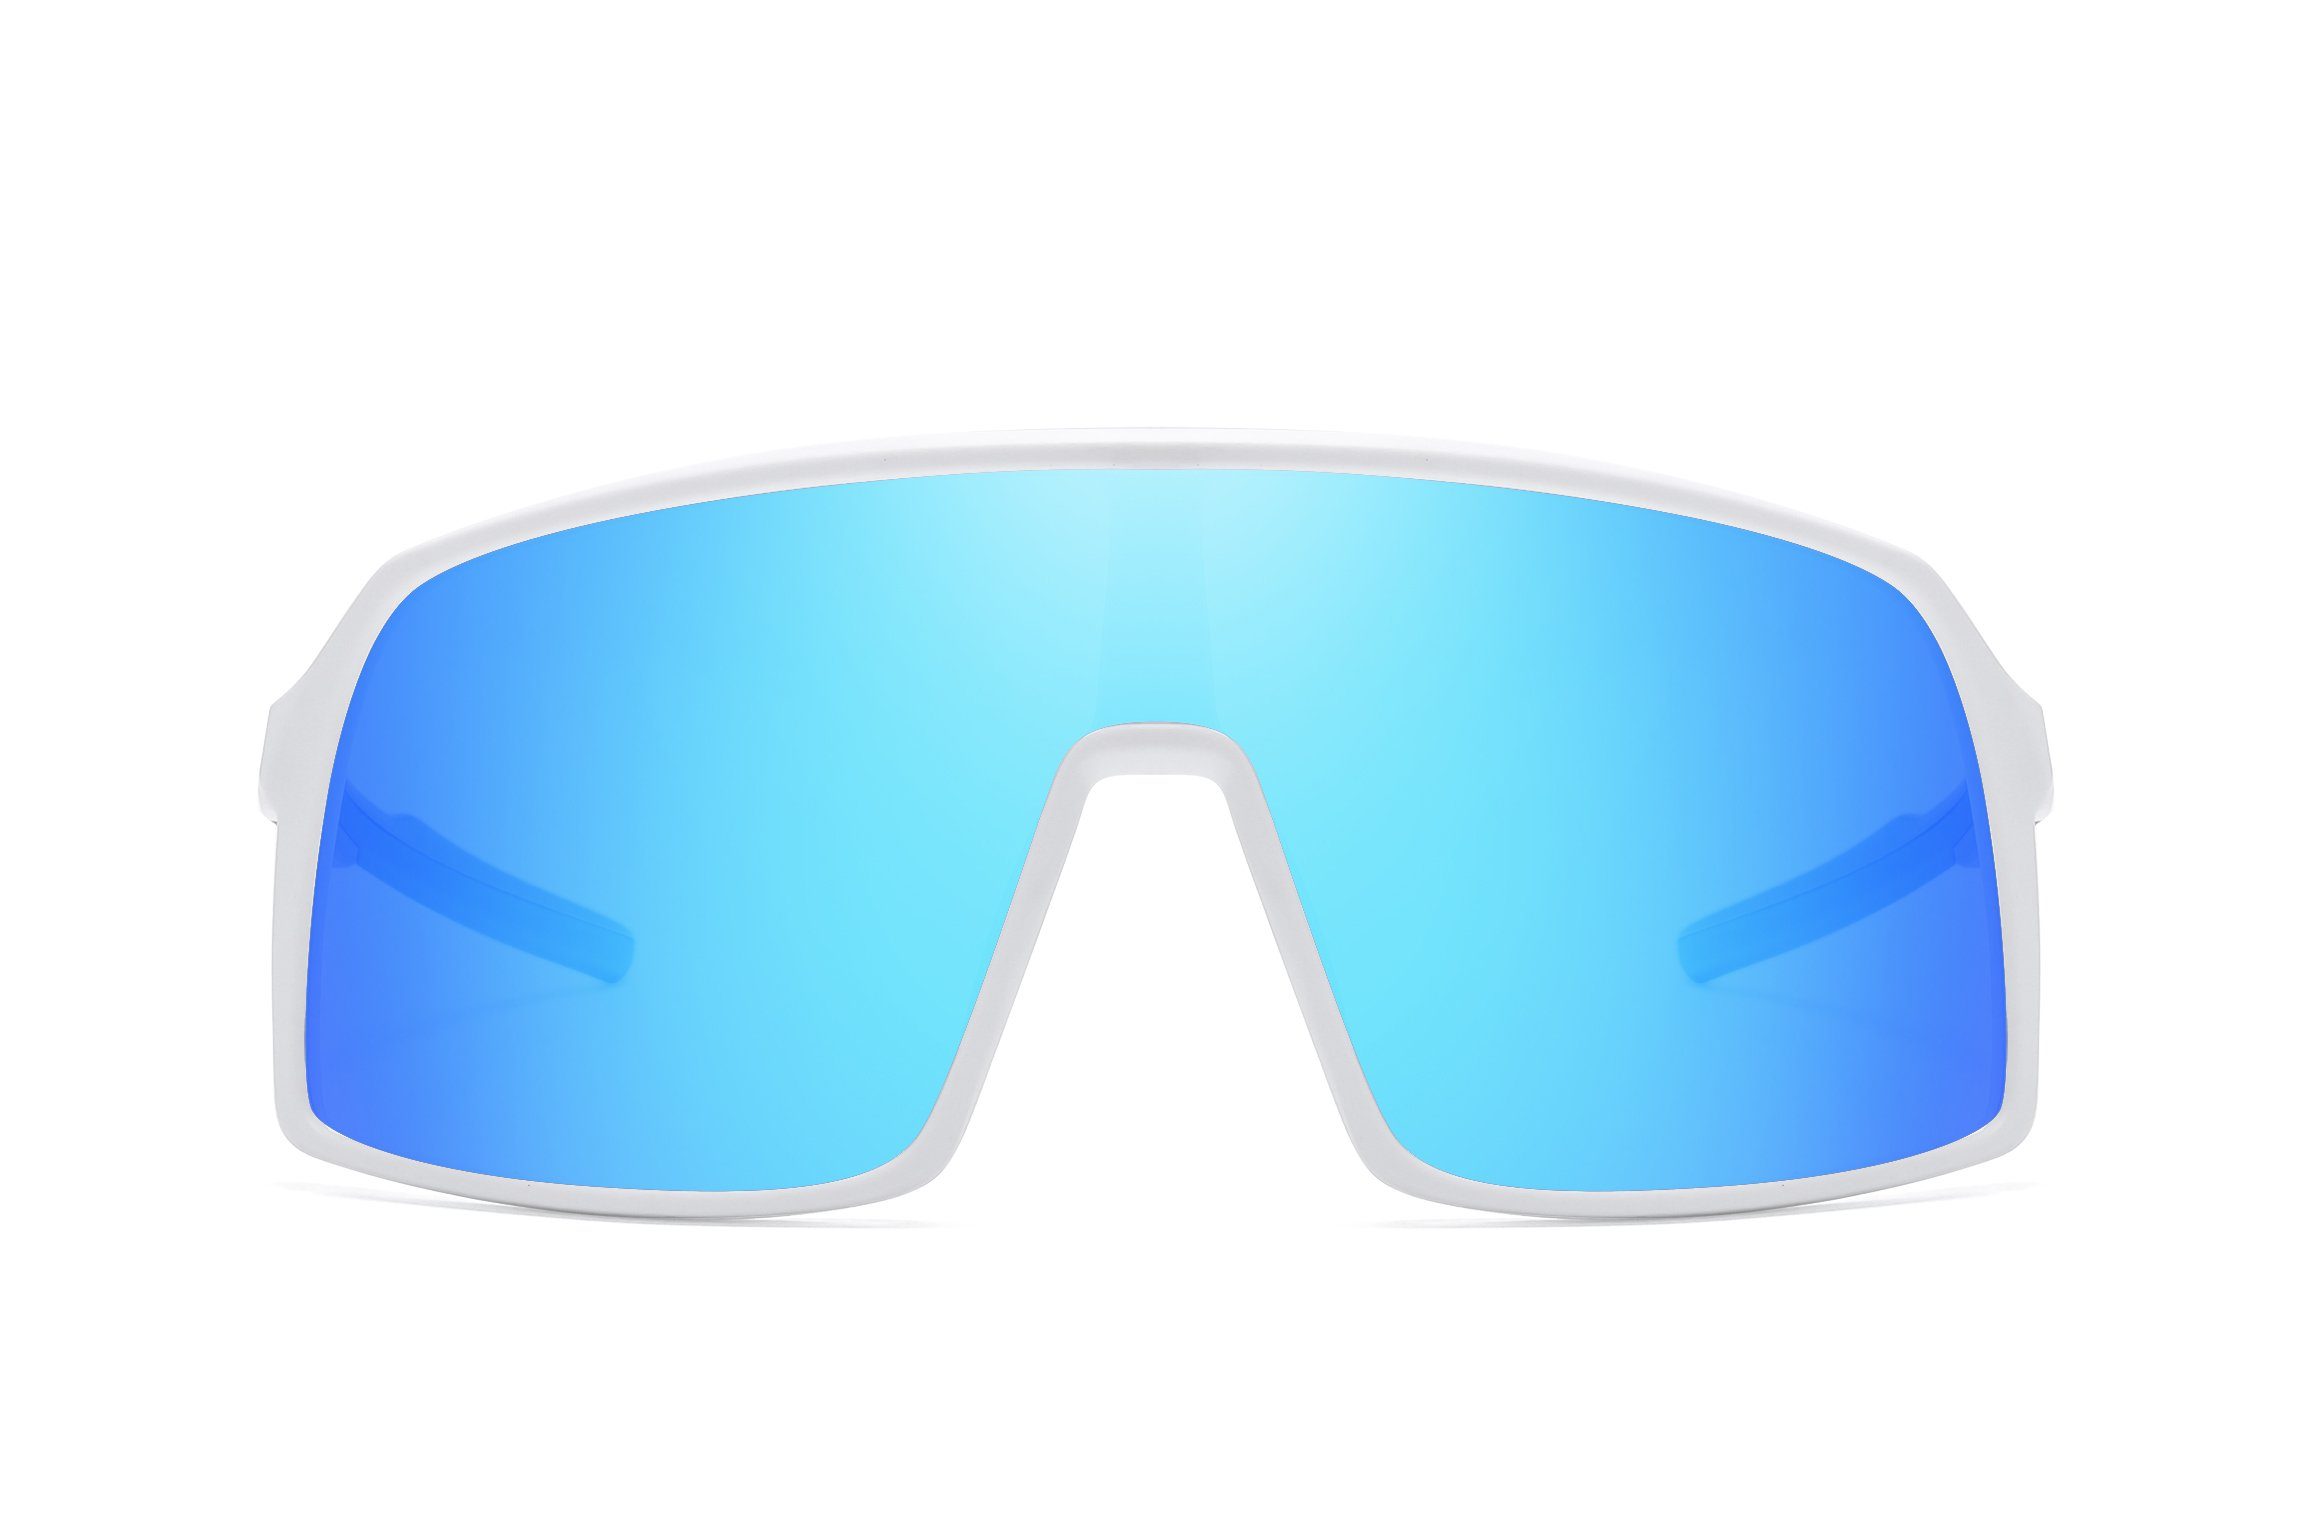 Herren Unisex leicht Sportbrille Fahrradbrille Fahrradbrille Damen PACIEA polarisiert weißblau